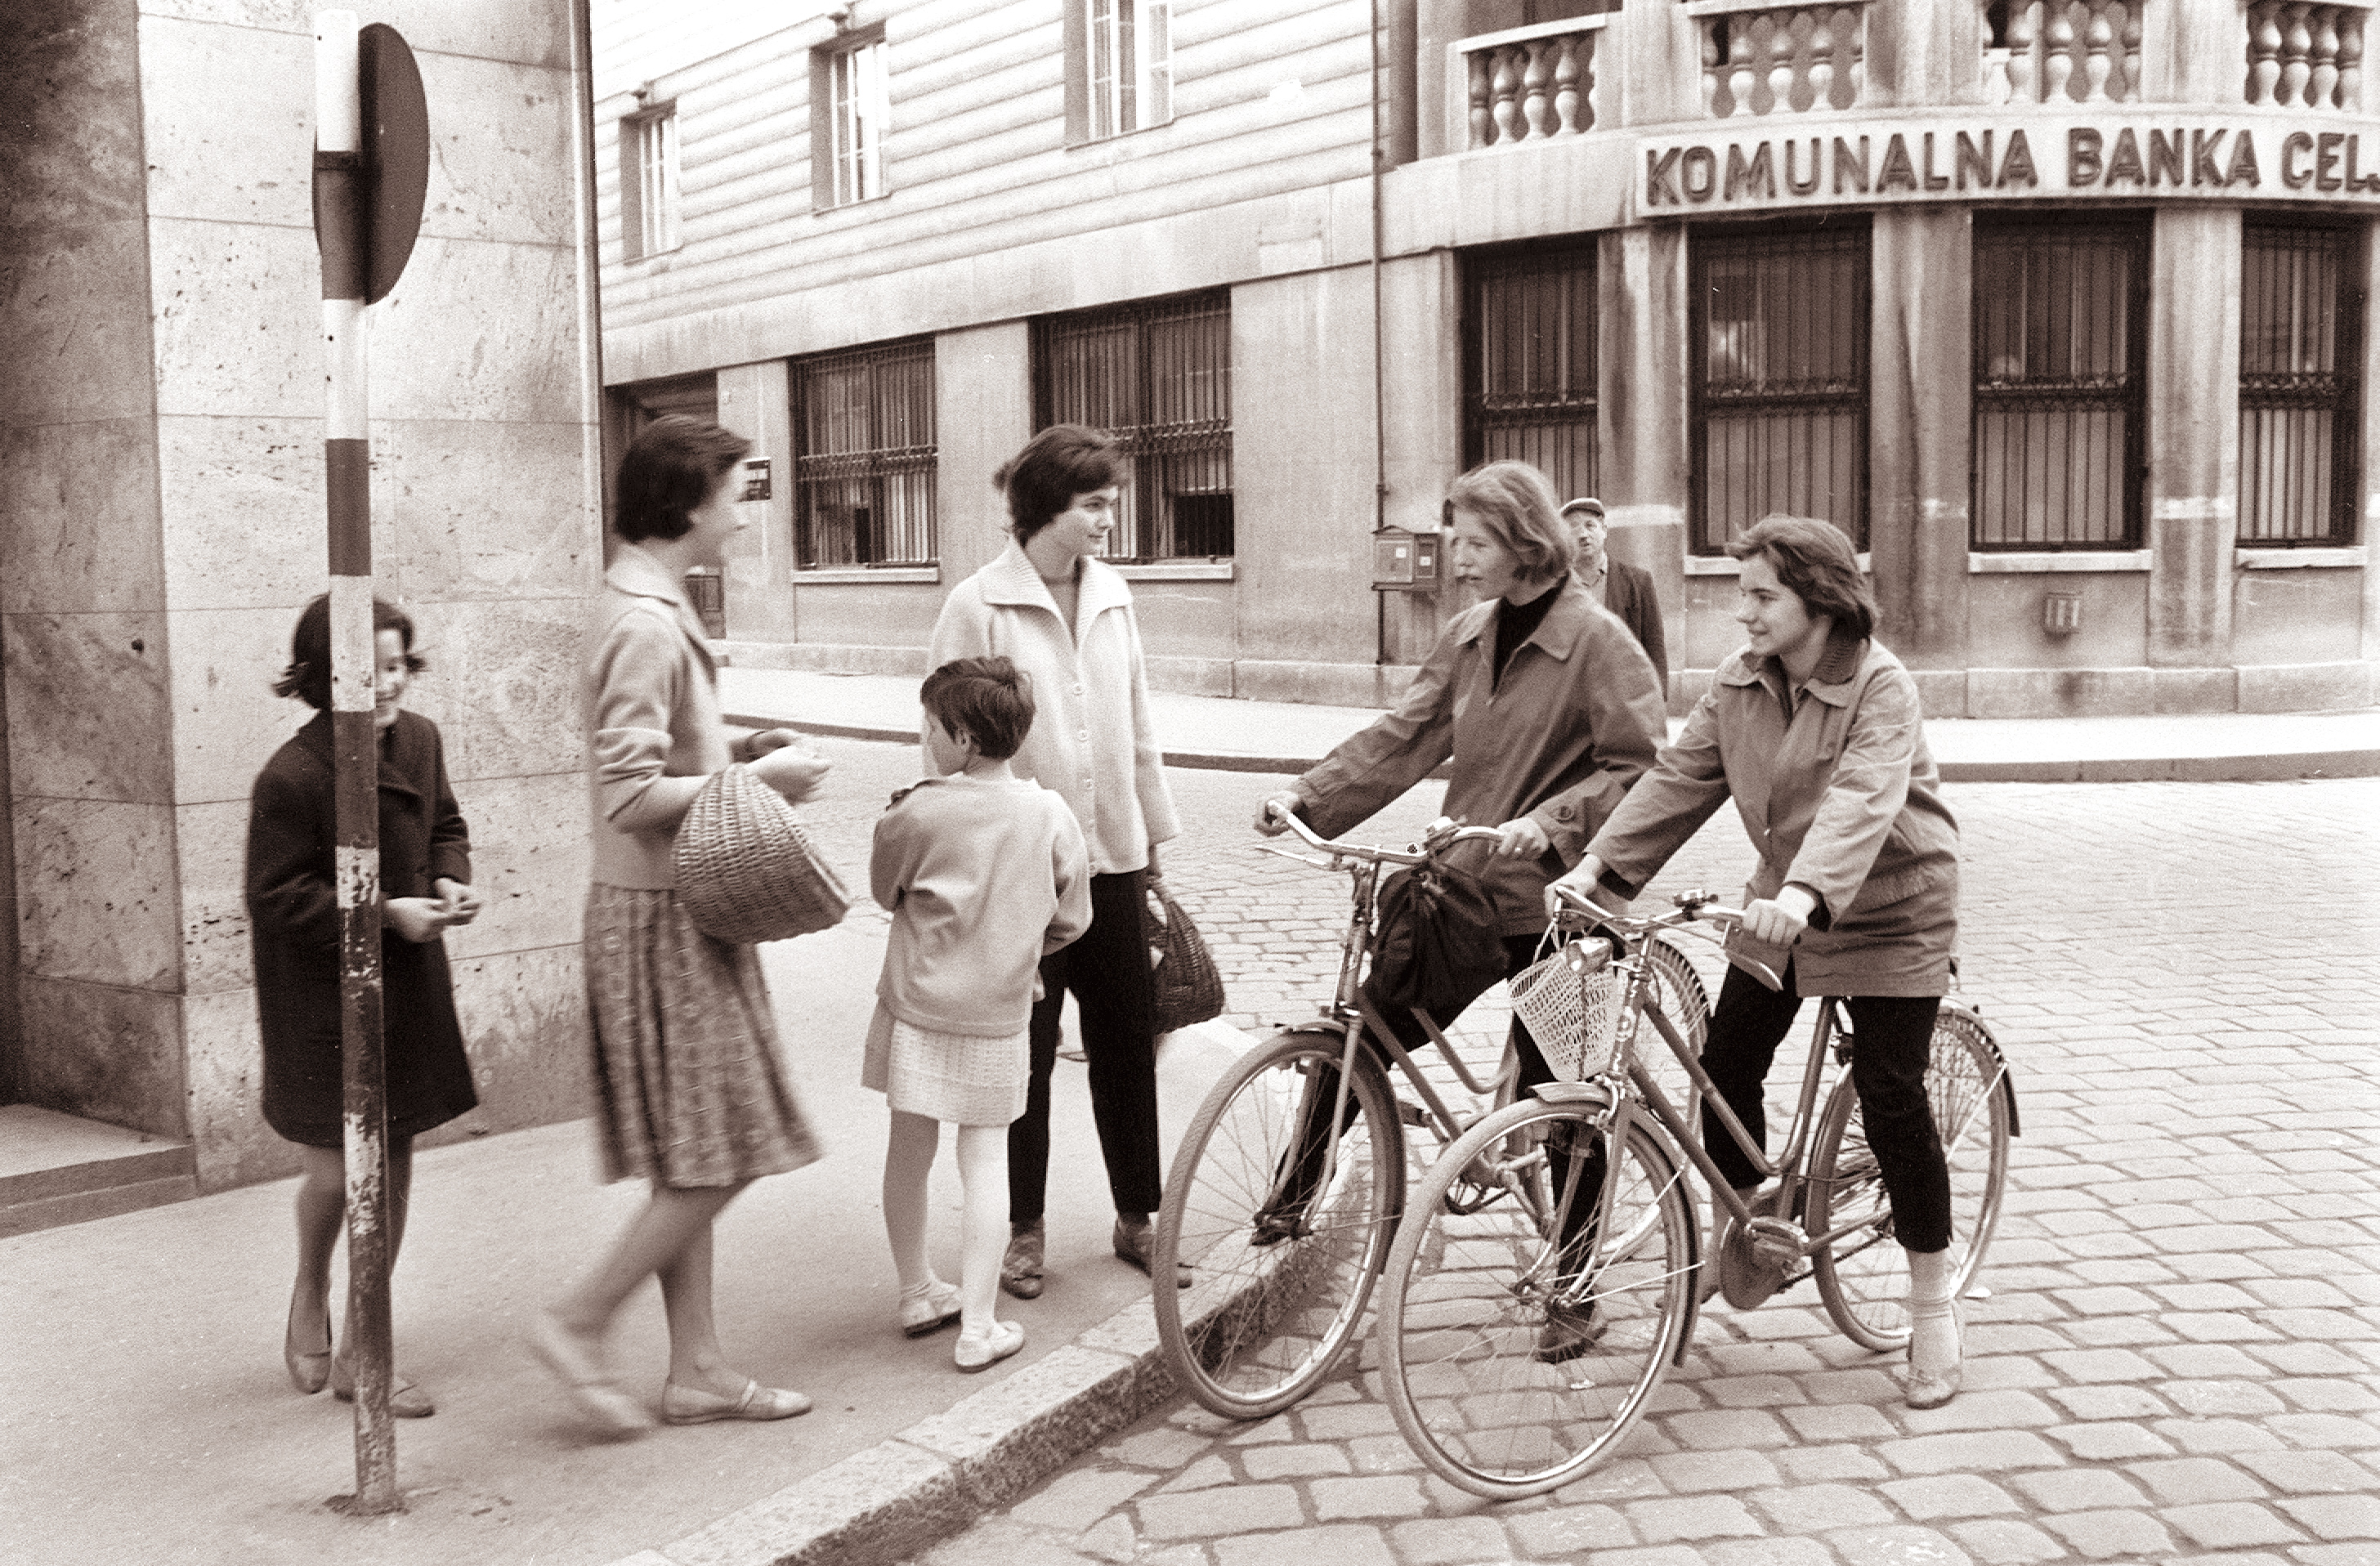 Mladina v Stanetovi ulici 1961